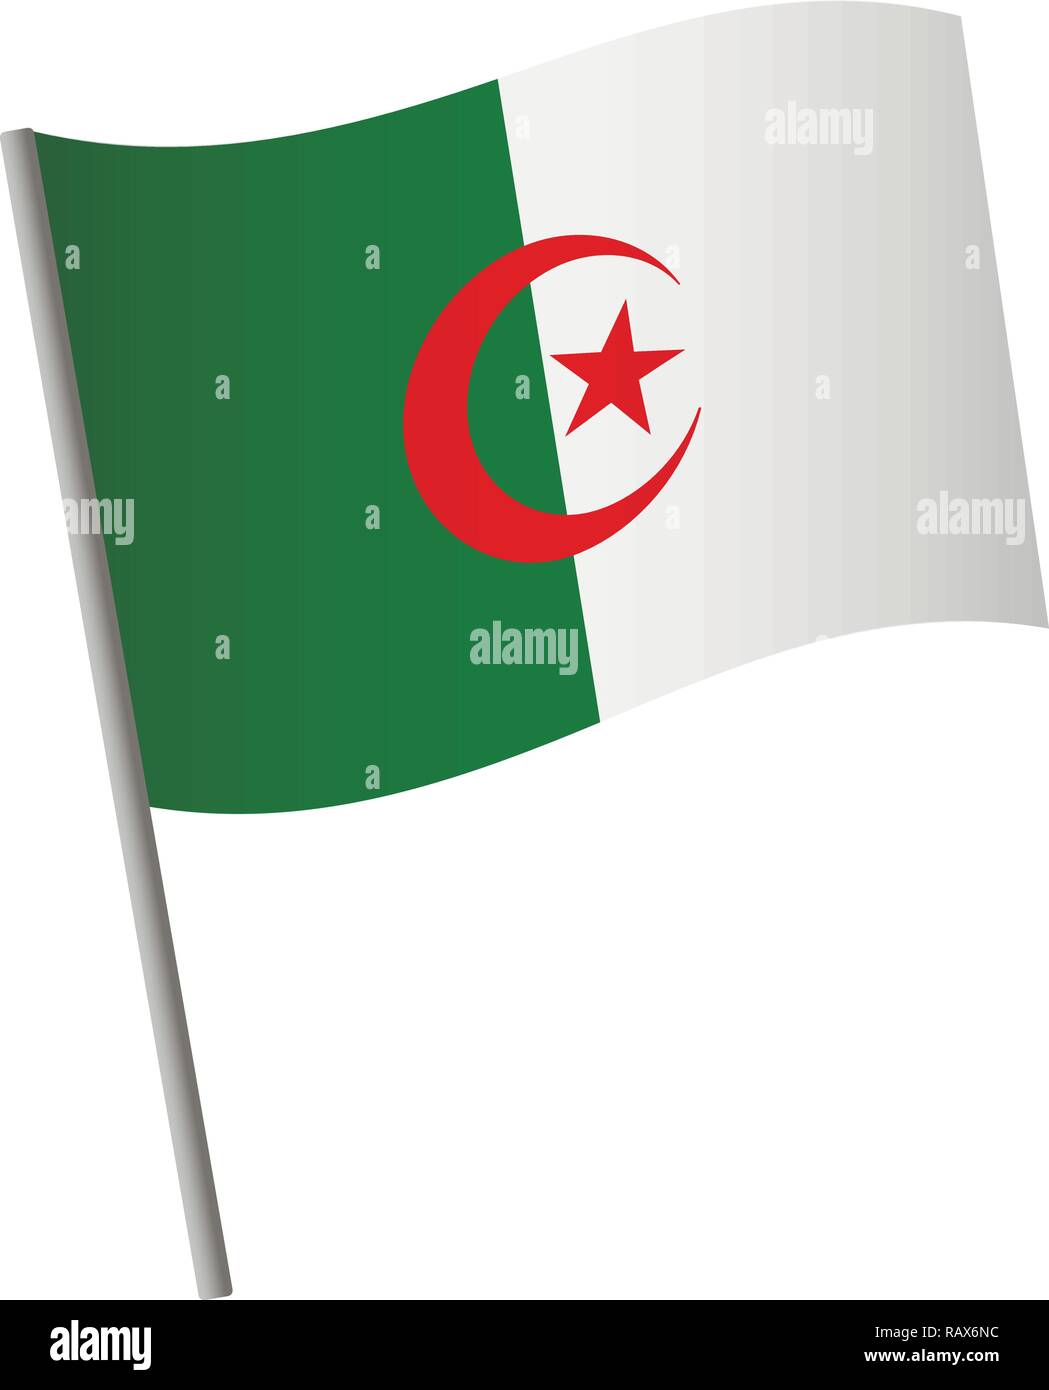 Algeria flag icon. National flag of Algeria on a pole vector illustration. Stock Vector